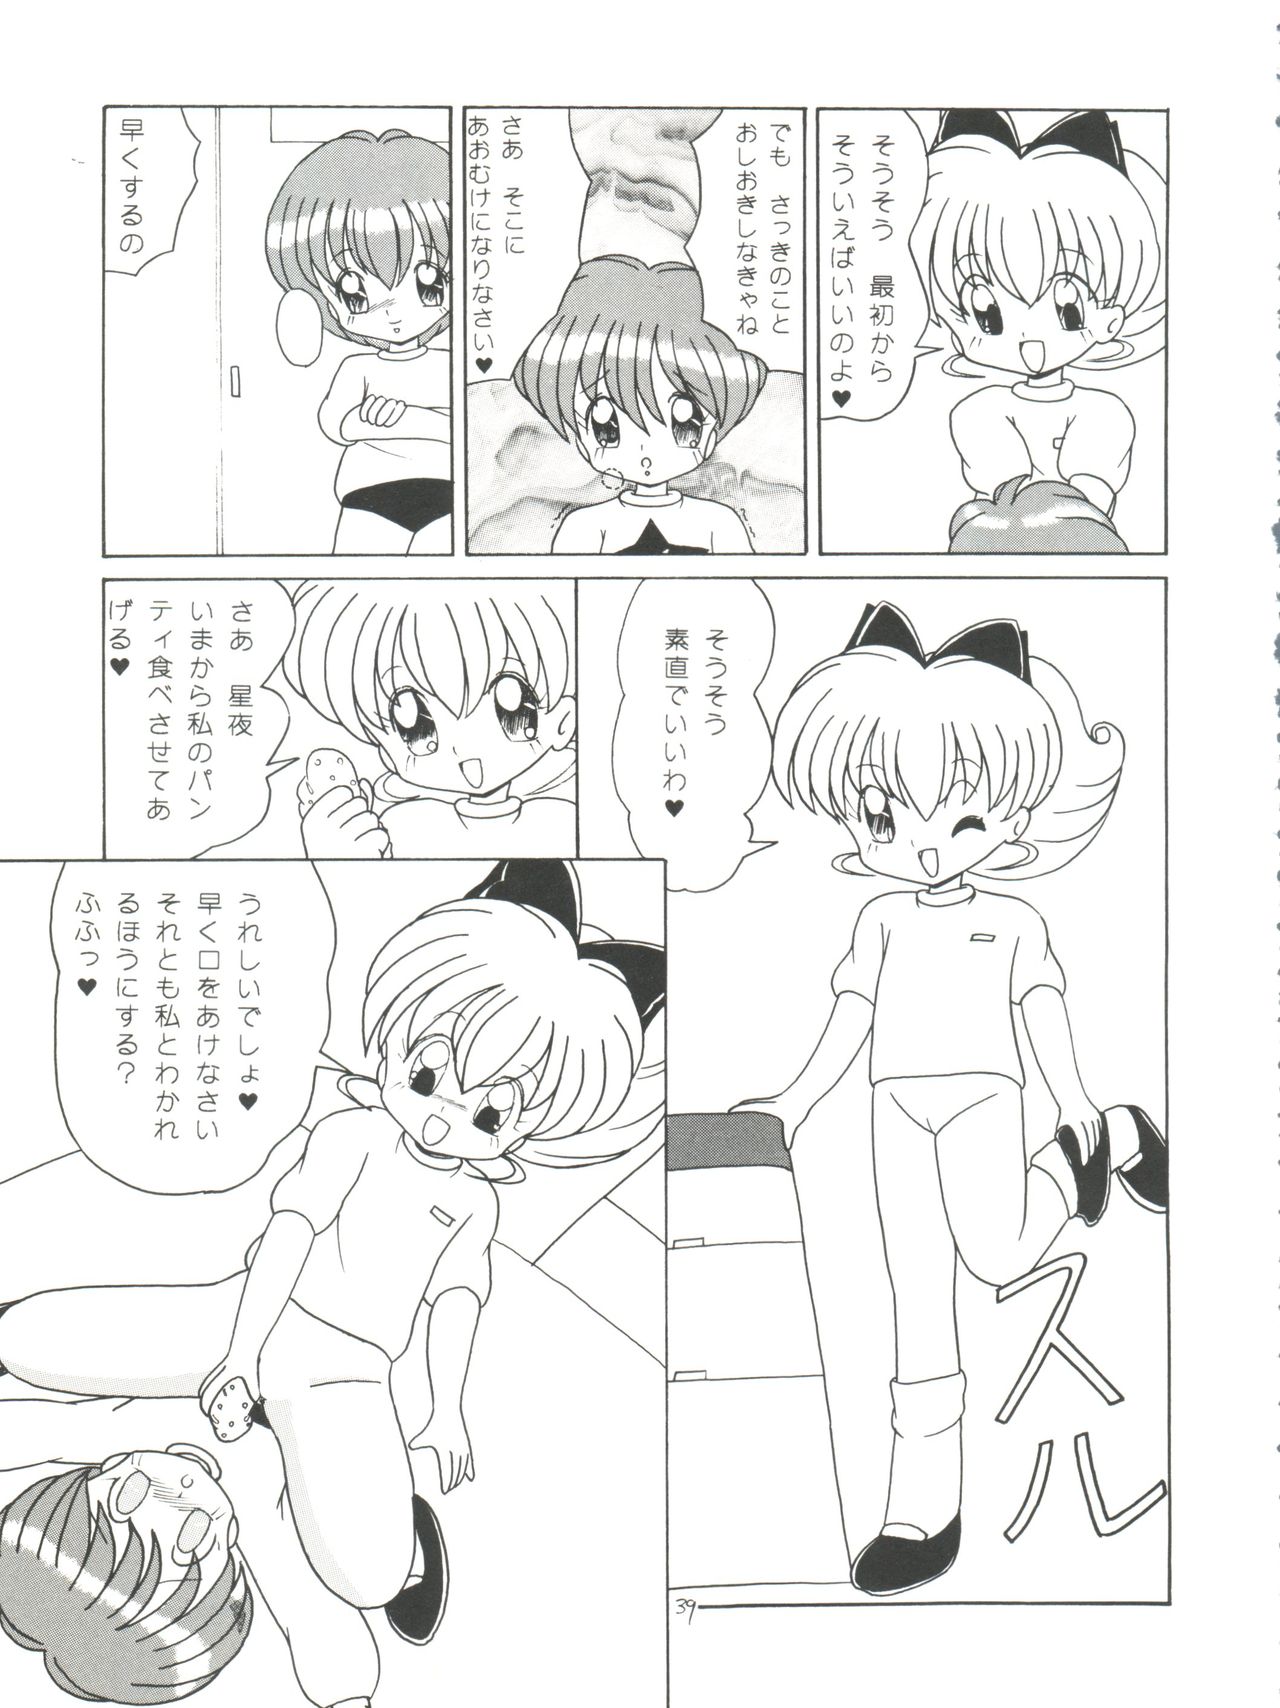 [Momo no Tsubomi (Various)] Lolikko LOVE 4 (Various) page 39 full